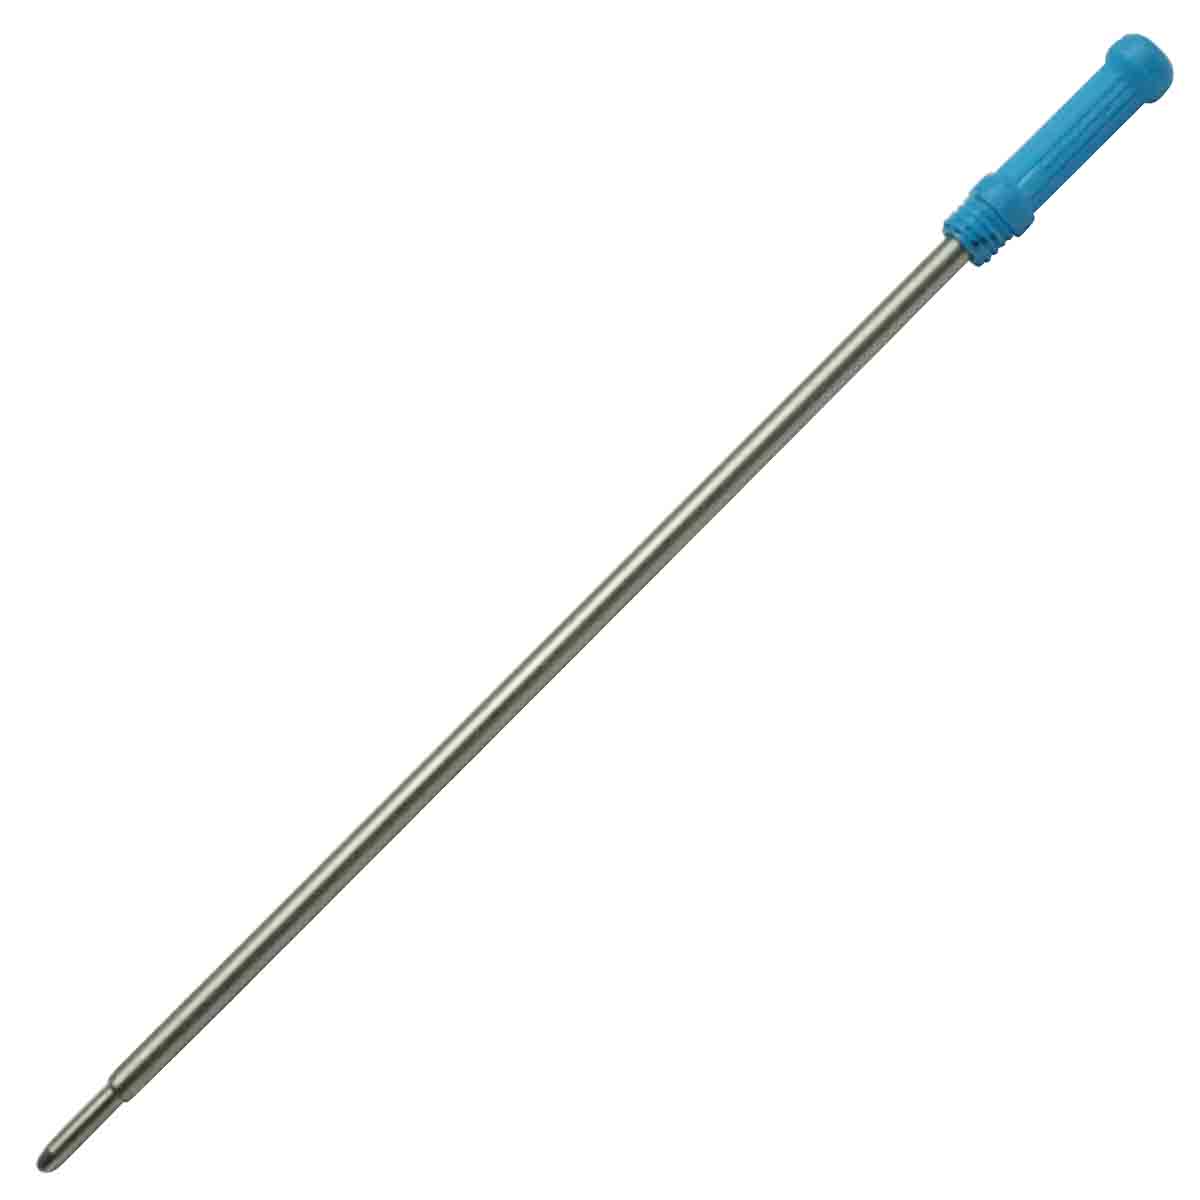 Ukoba 1.0mm Blue Twist Ball Pen Refill Model 71058